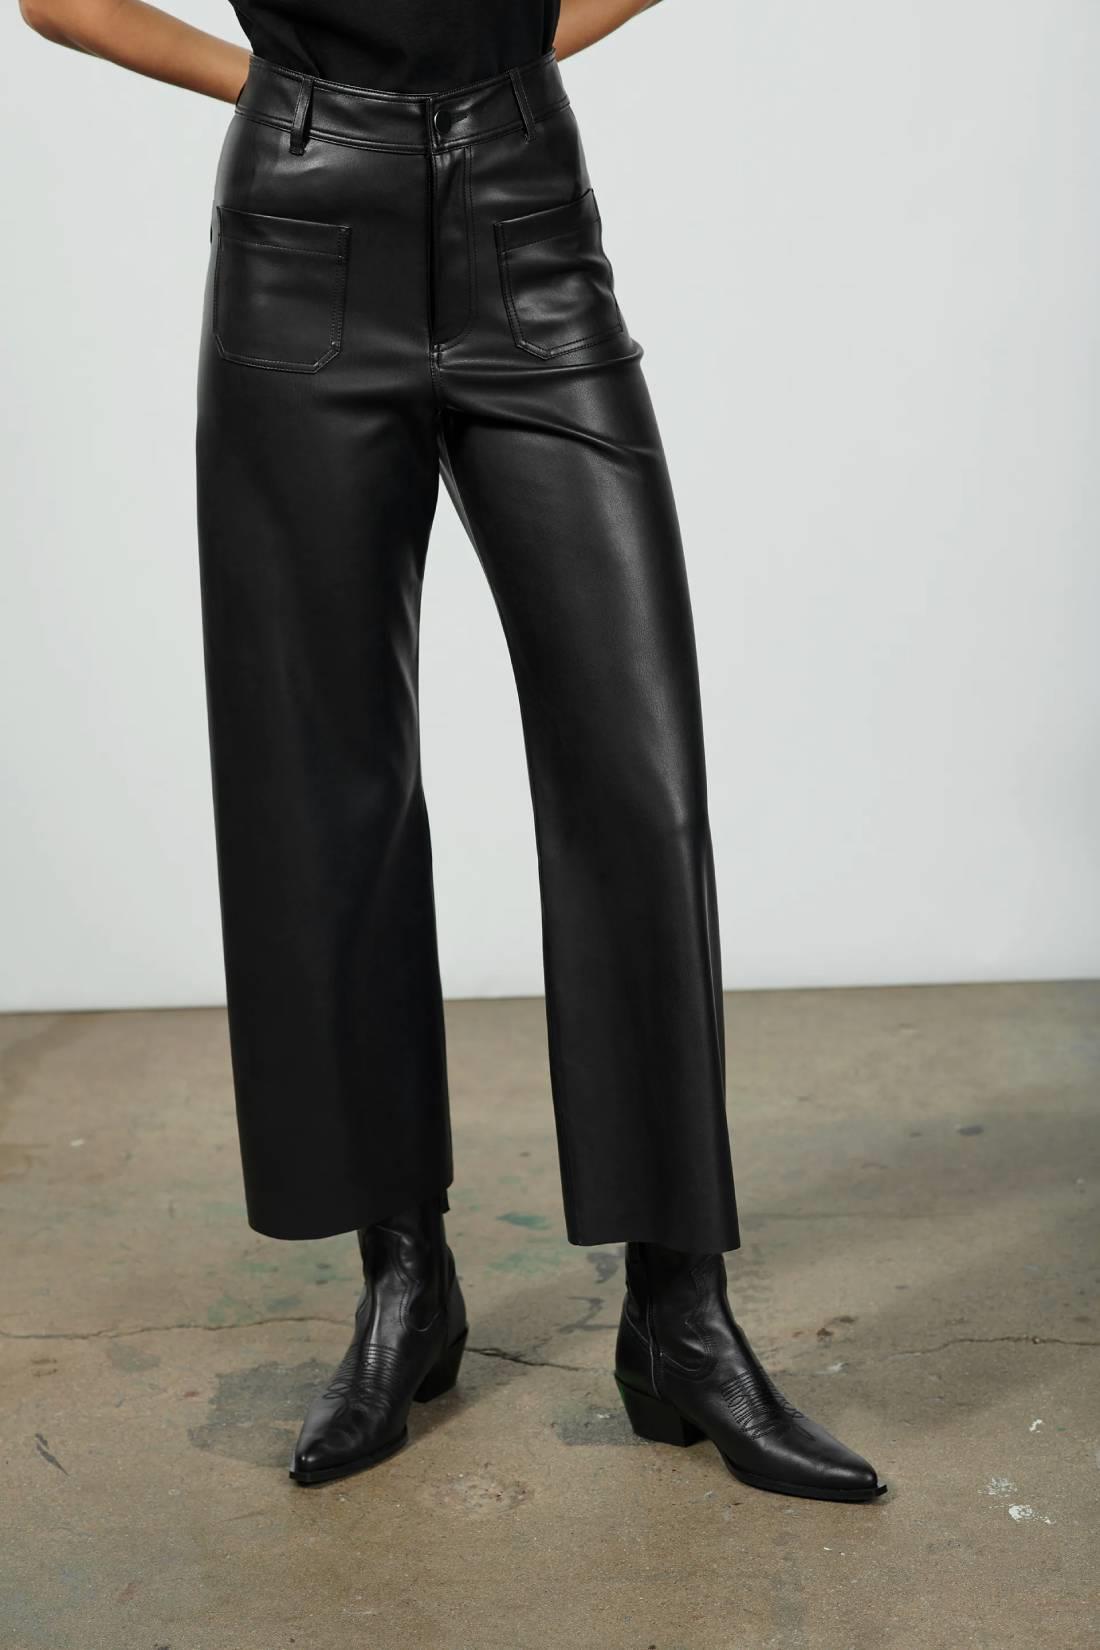 Pantalones 'efecto cuero' anchos, Zara